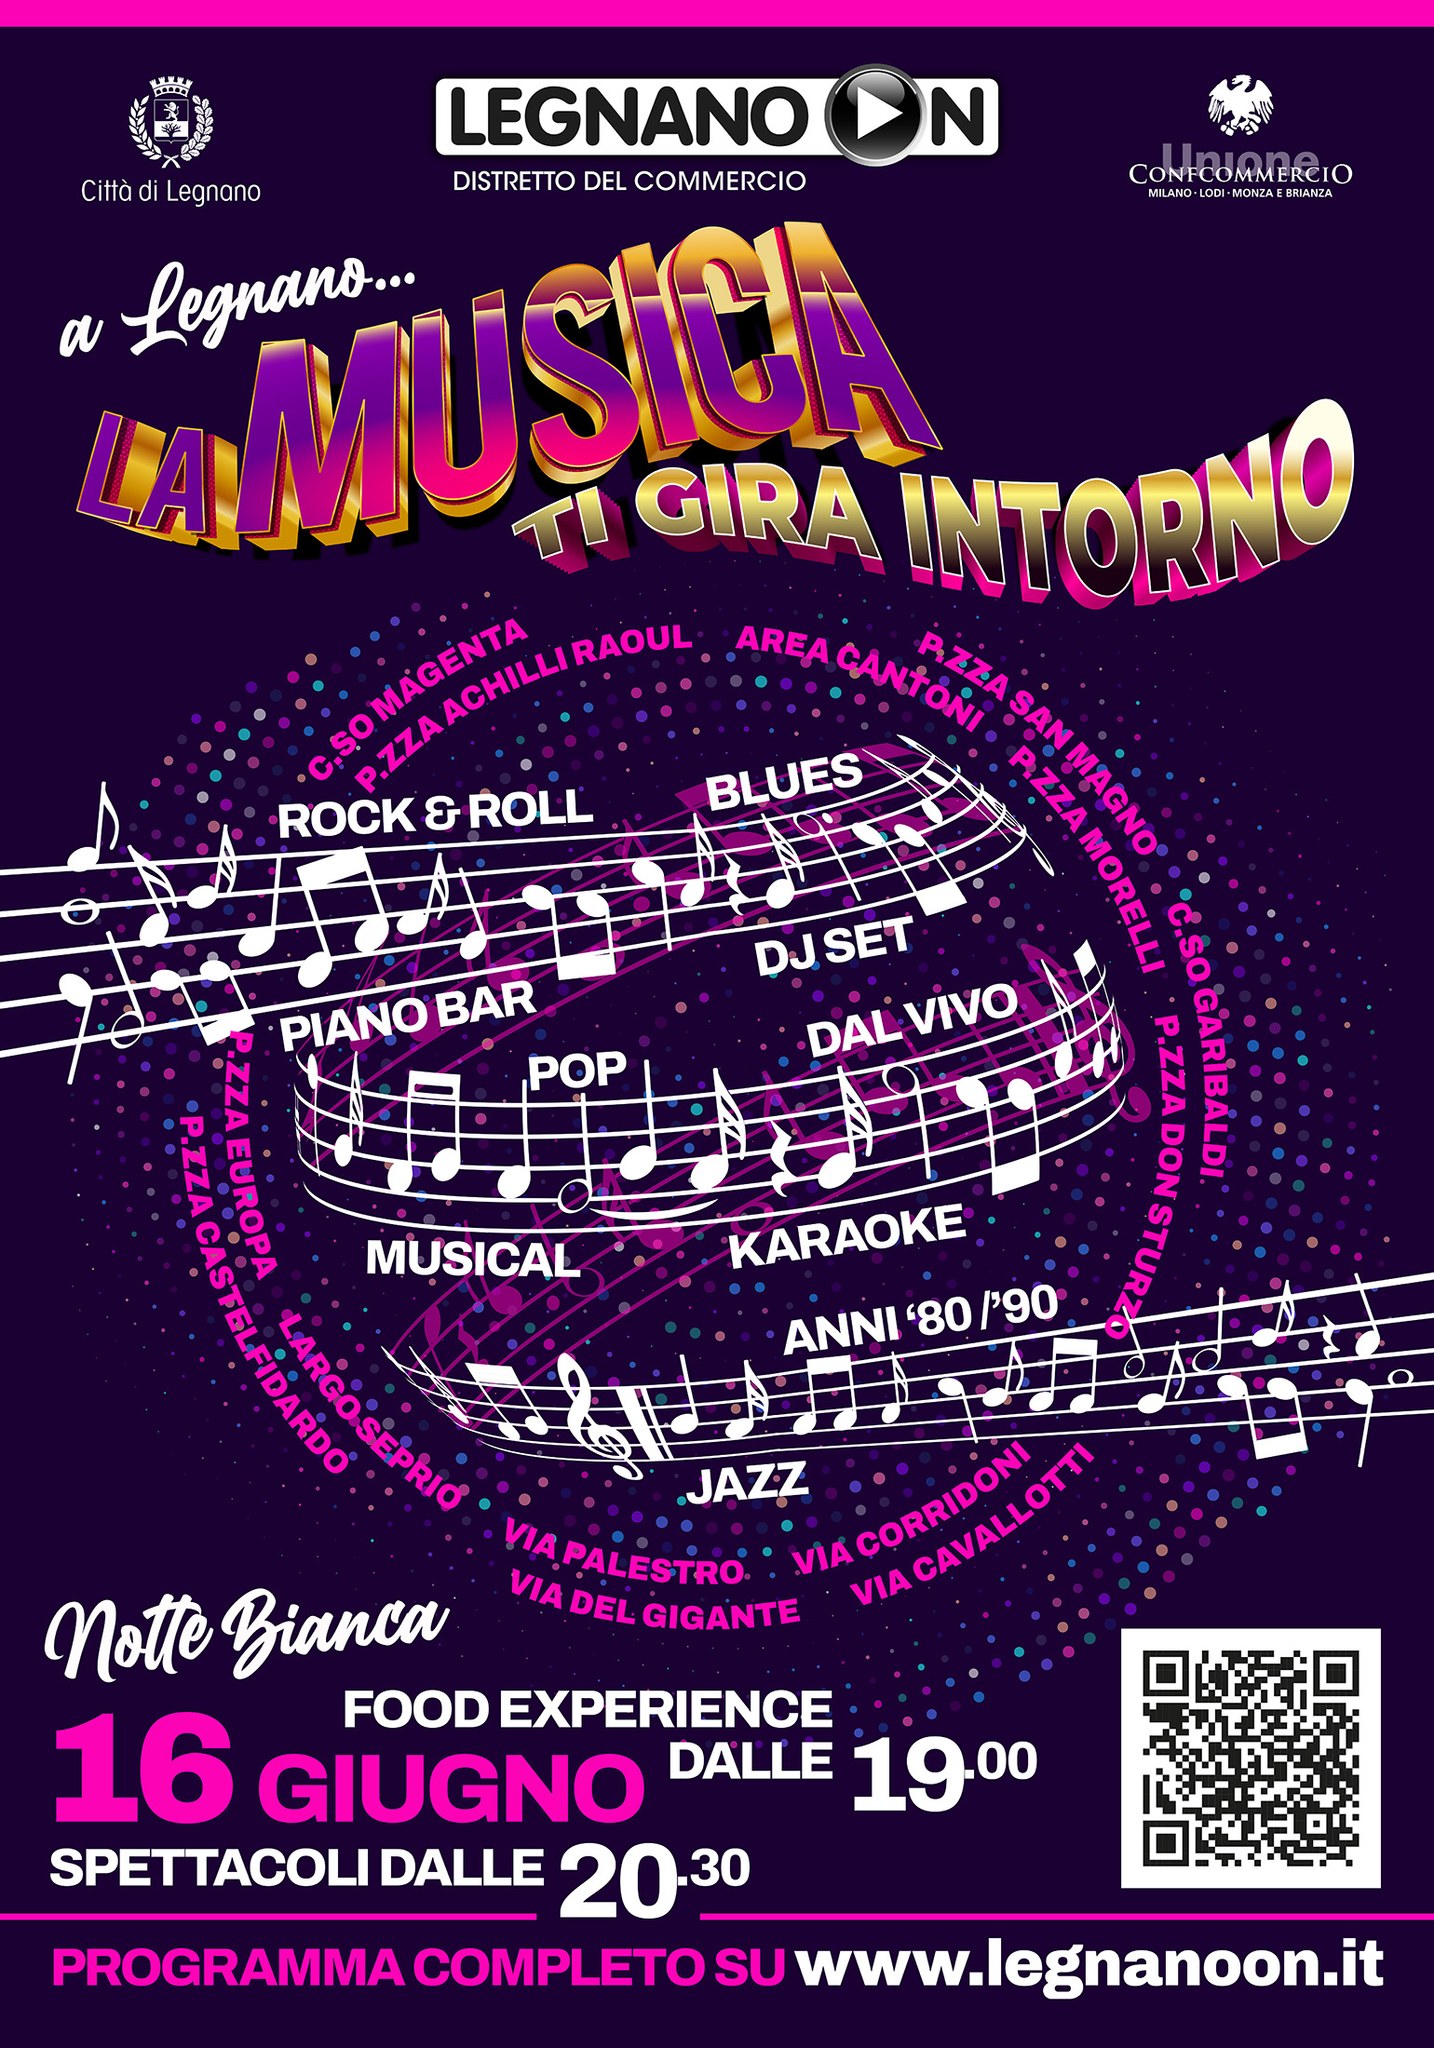 Tutto il programma della Notte Bianca a Legnano!!! Stasera 16 Giugno pronti per La Musica ti gira intorno!!!!